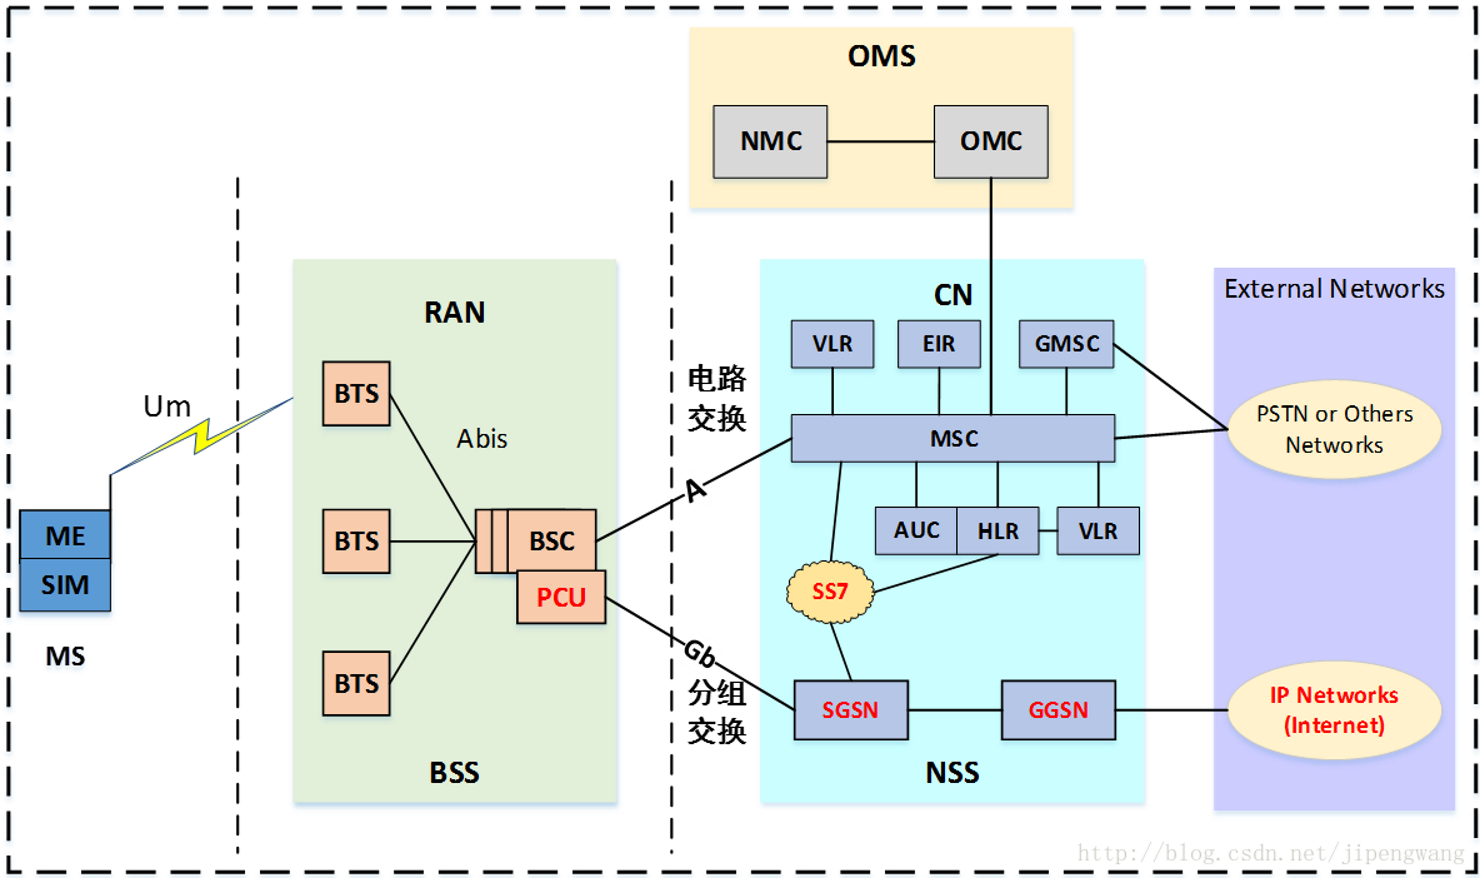 gprs网络结构图图片